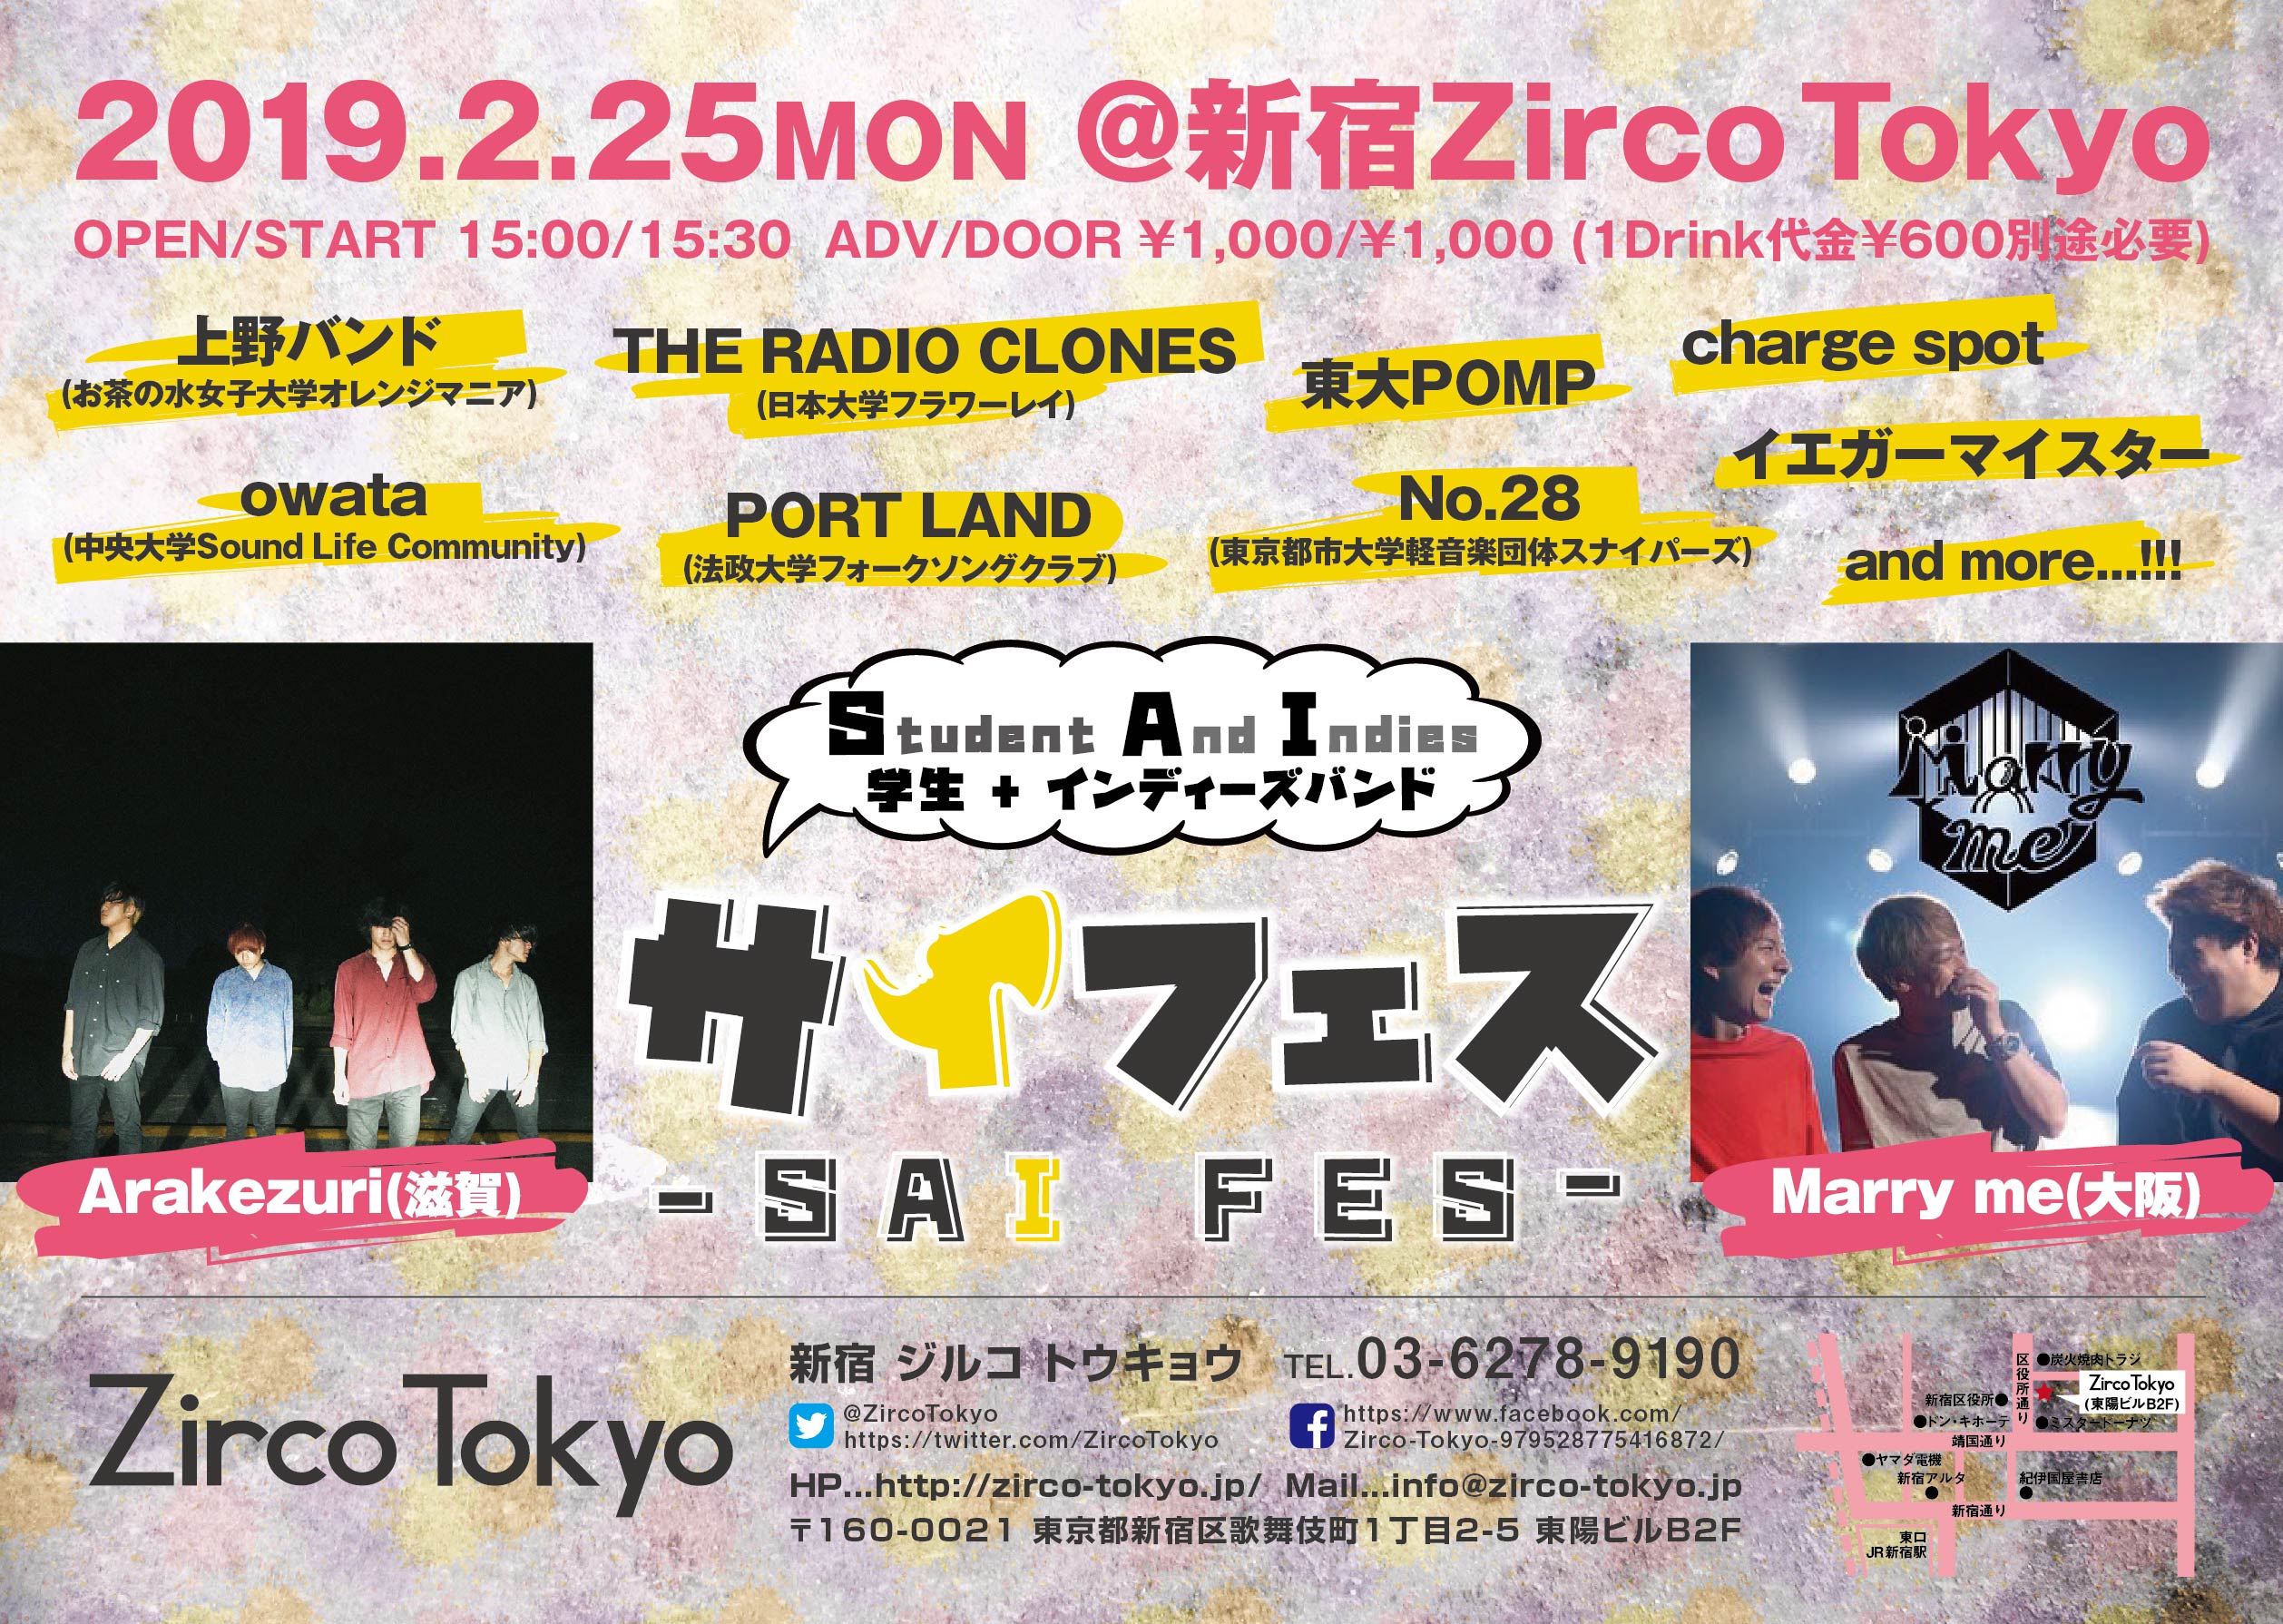 Zirco Tokyo 東京 新宿歌舞伎町のライブハウス